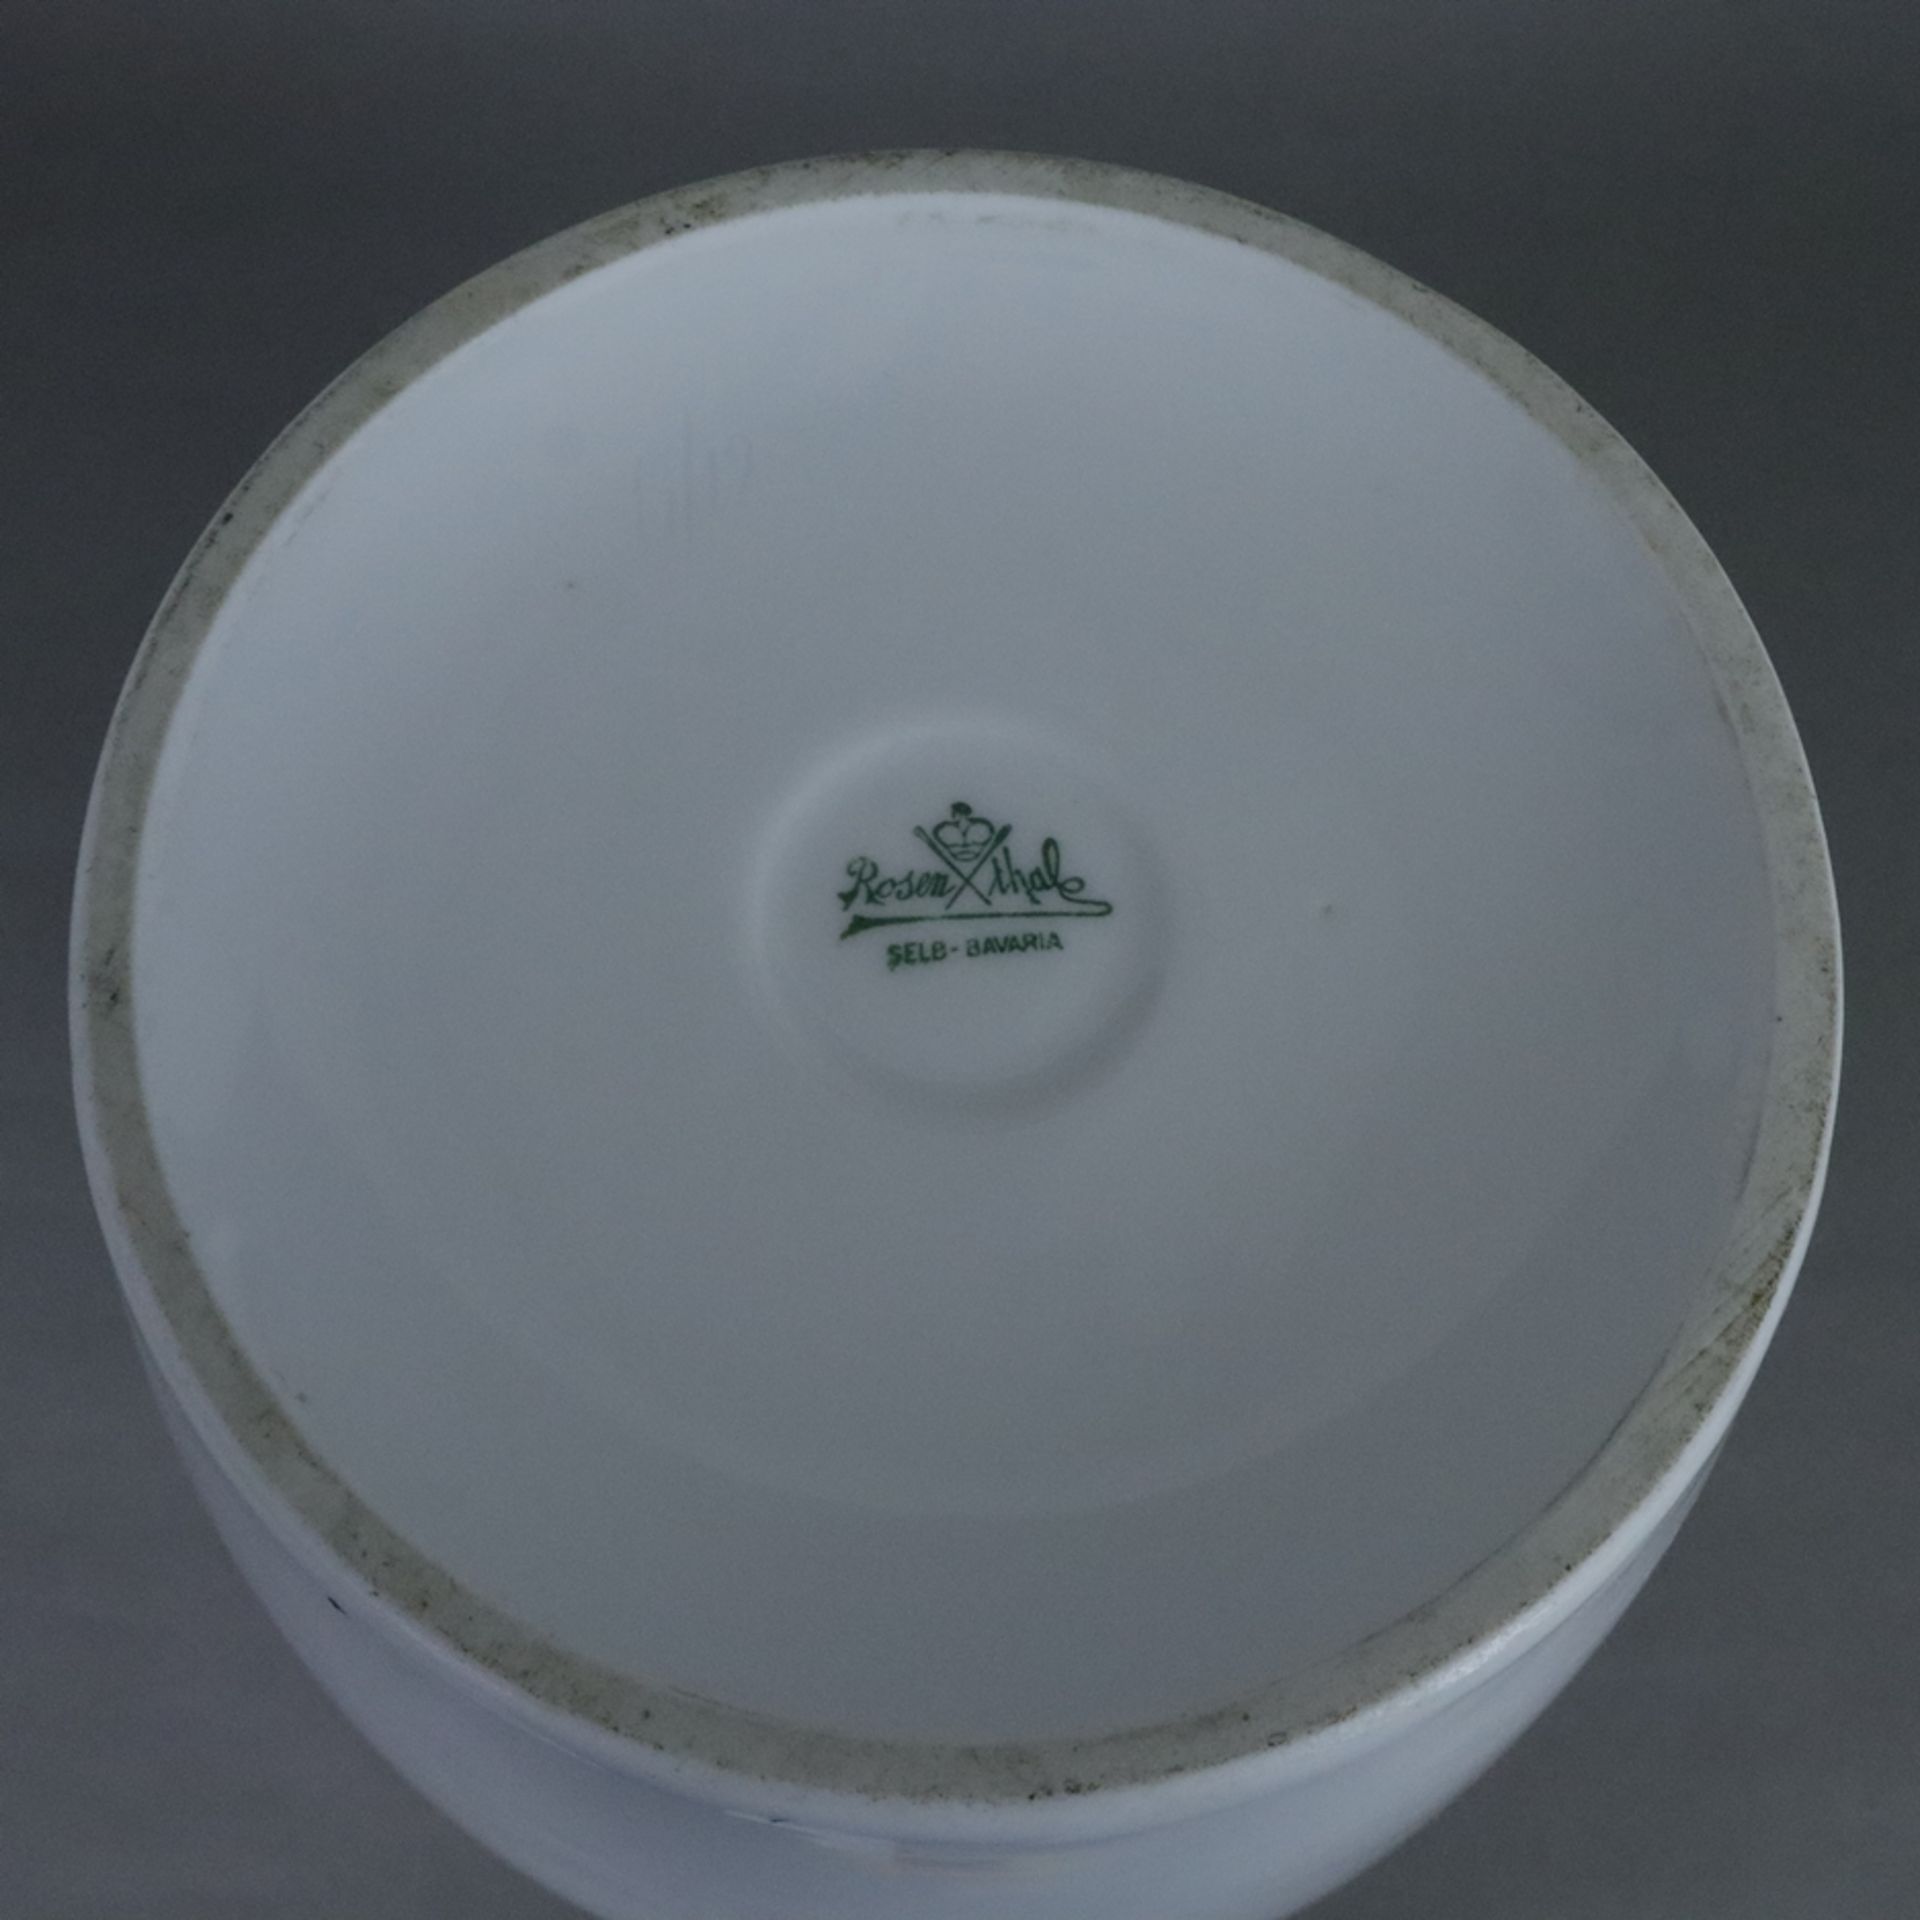 Große Balustervase - Rosenthal, Selb, schwerer Porzellanscherben, weiß, glasiert, unterseitig Manuf - Bild 5 aus 6